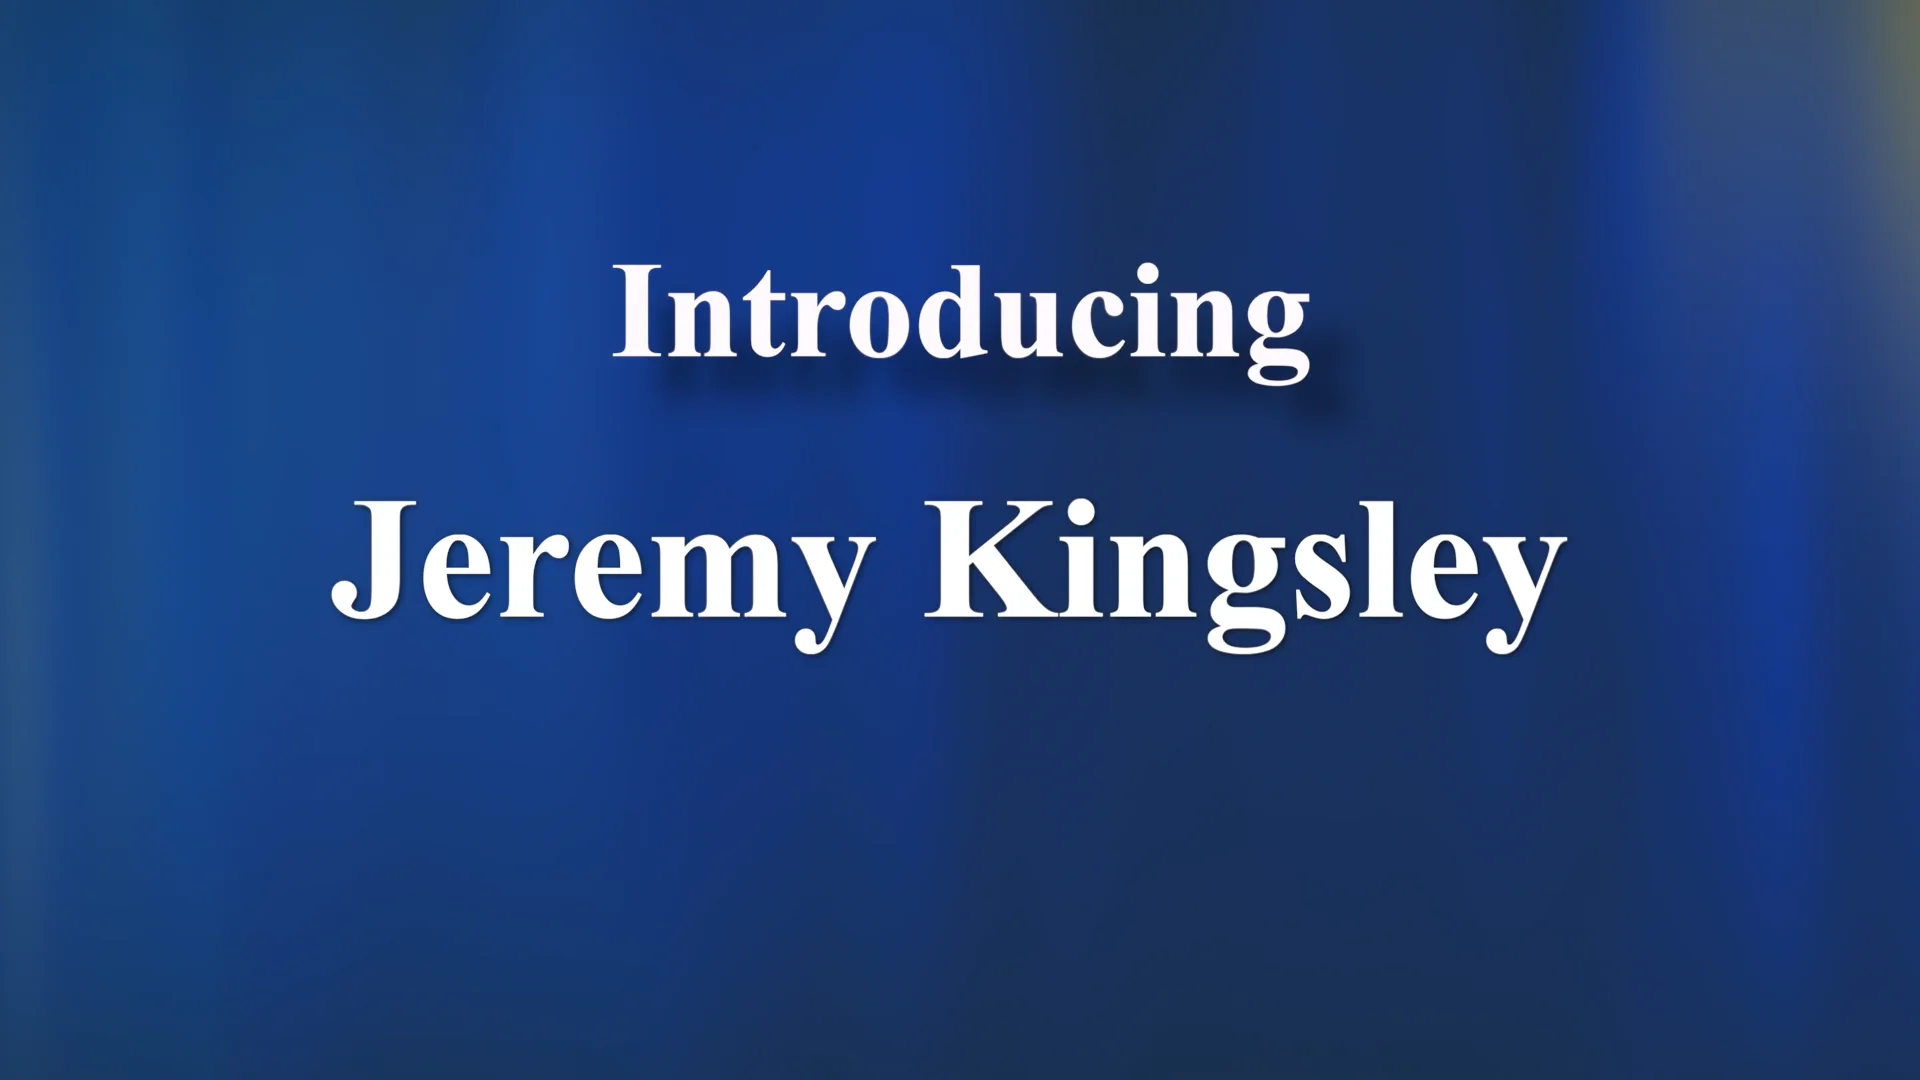 Jeremy Kingsley